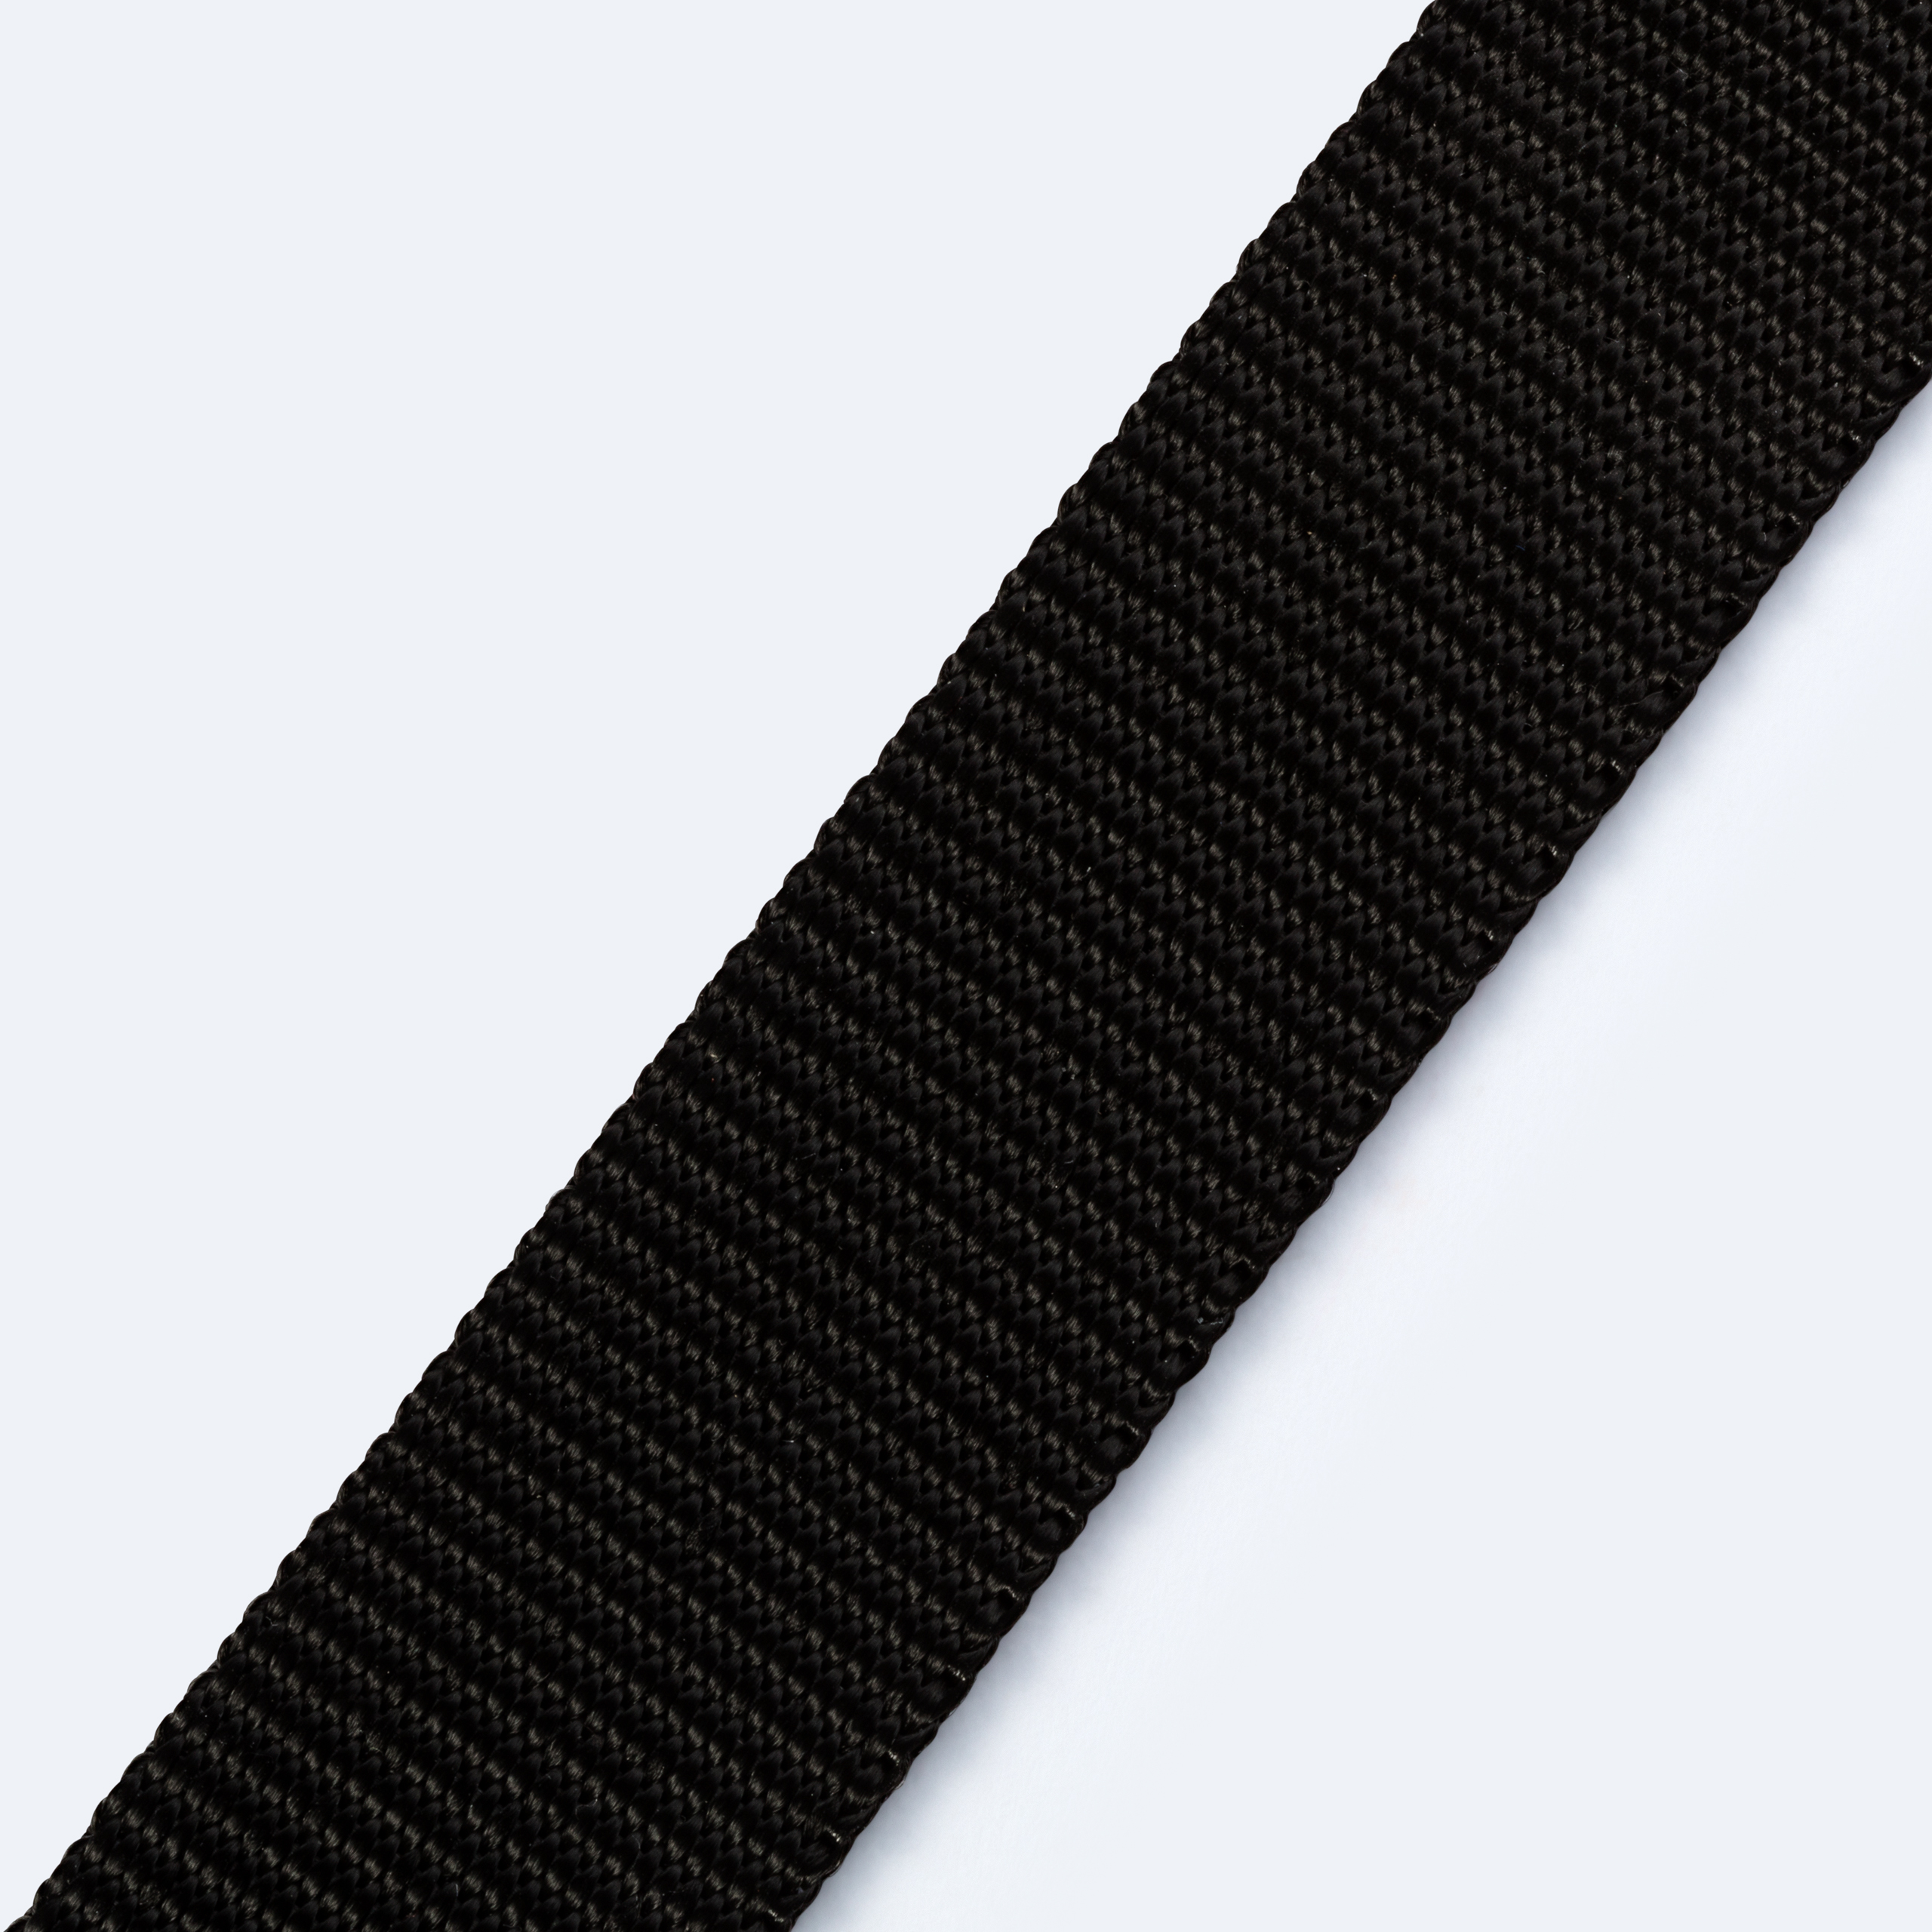 Gurtband für Rucksäcke 25 mm schwarz, Meterware